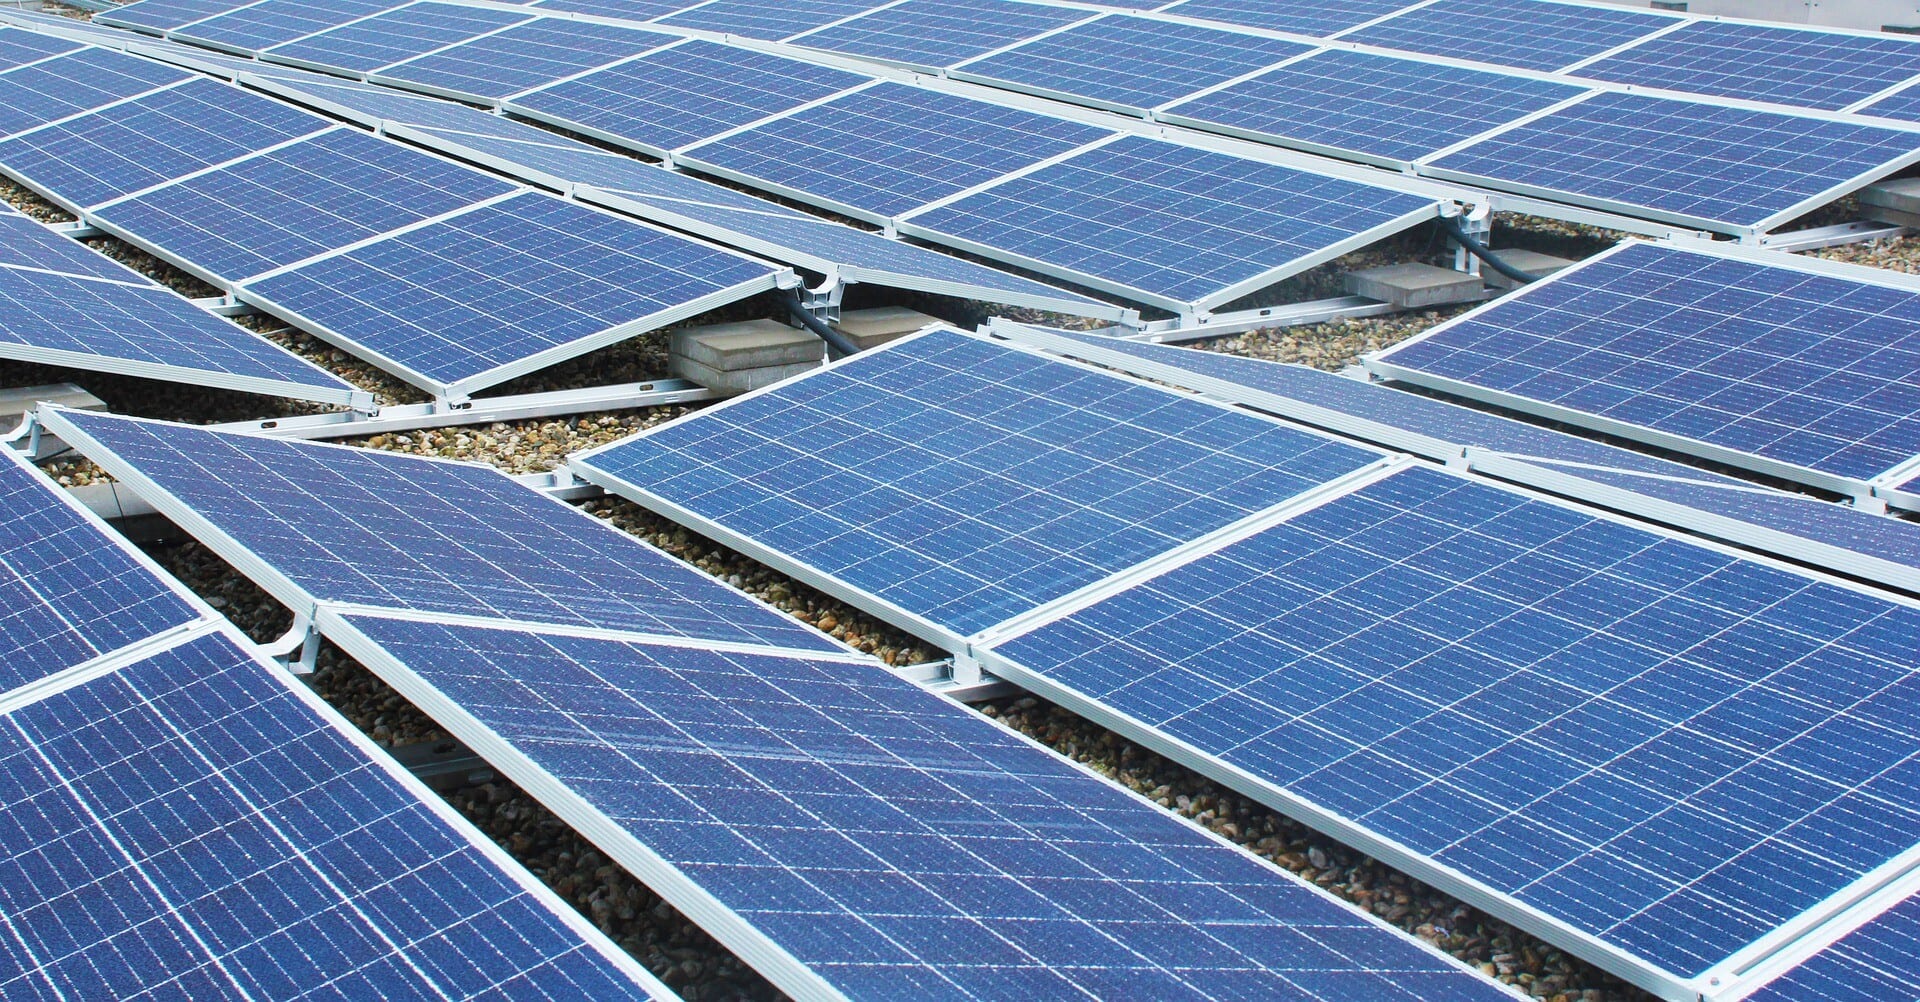 Bezirksamt in Berlin verdoppelt den Stromertrag mit Photovoltaikanlagen auf Schulen und Büros